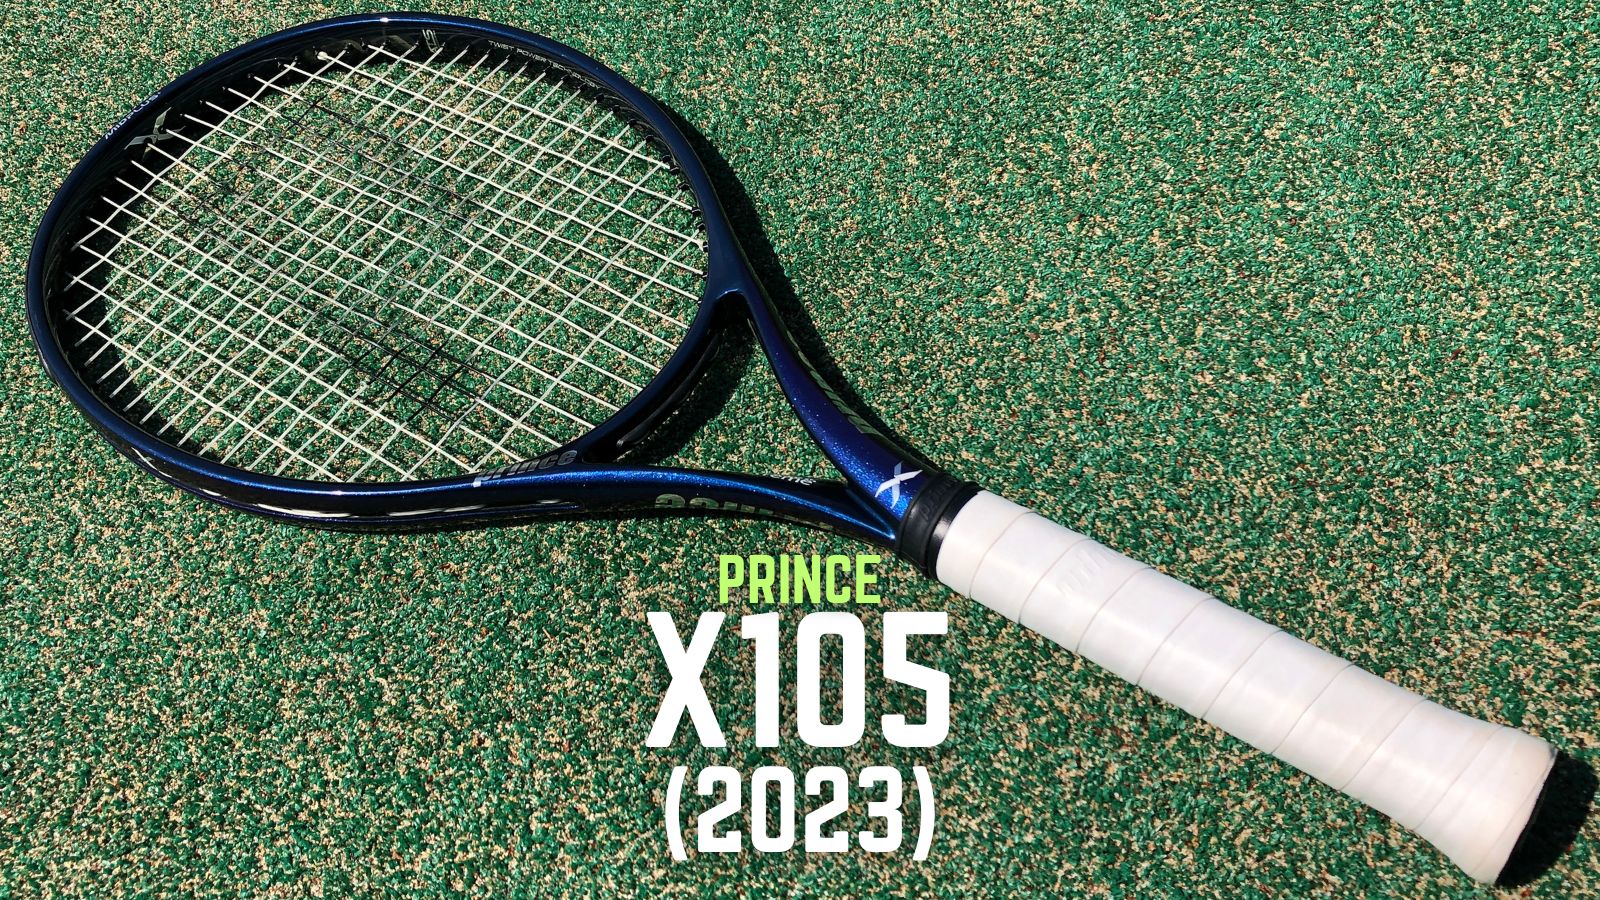 テニスラケット プリンス プリンス エックス 105 (270g) 2018年モデル (G2)PRINCE Prince X 105 (270g) 2018